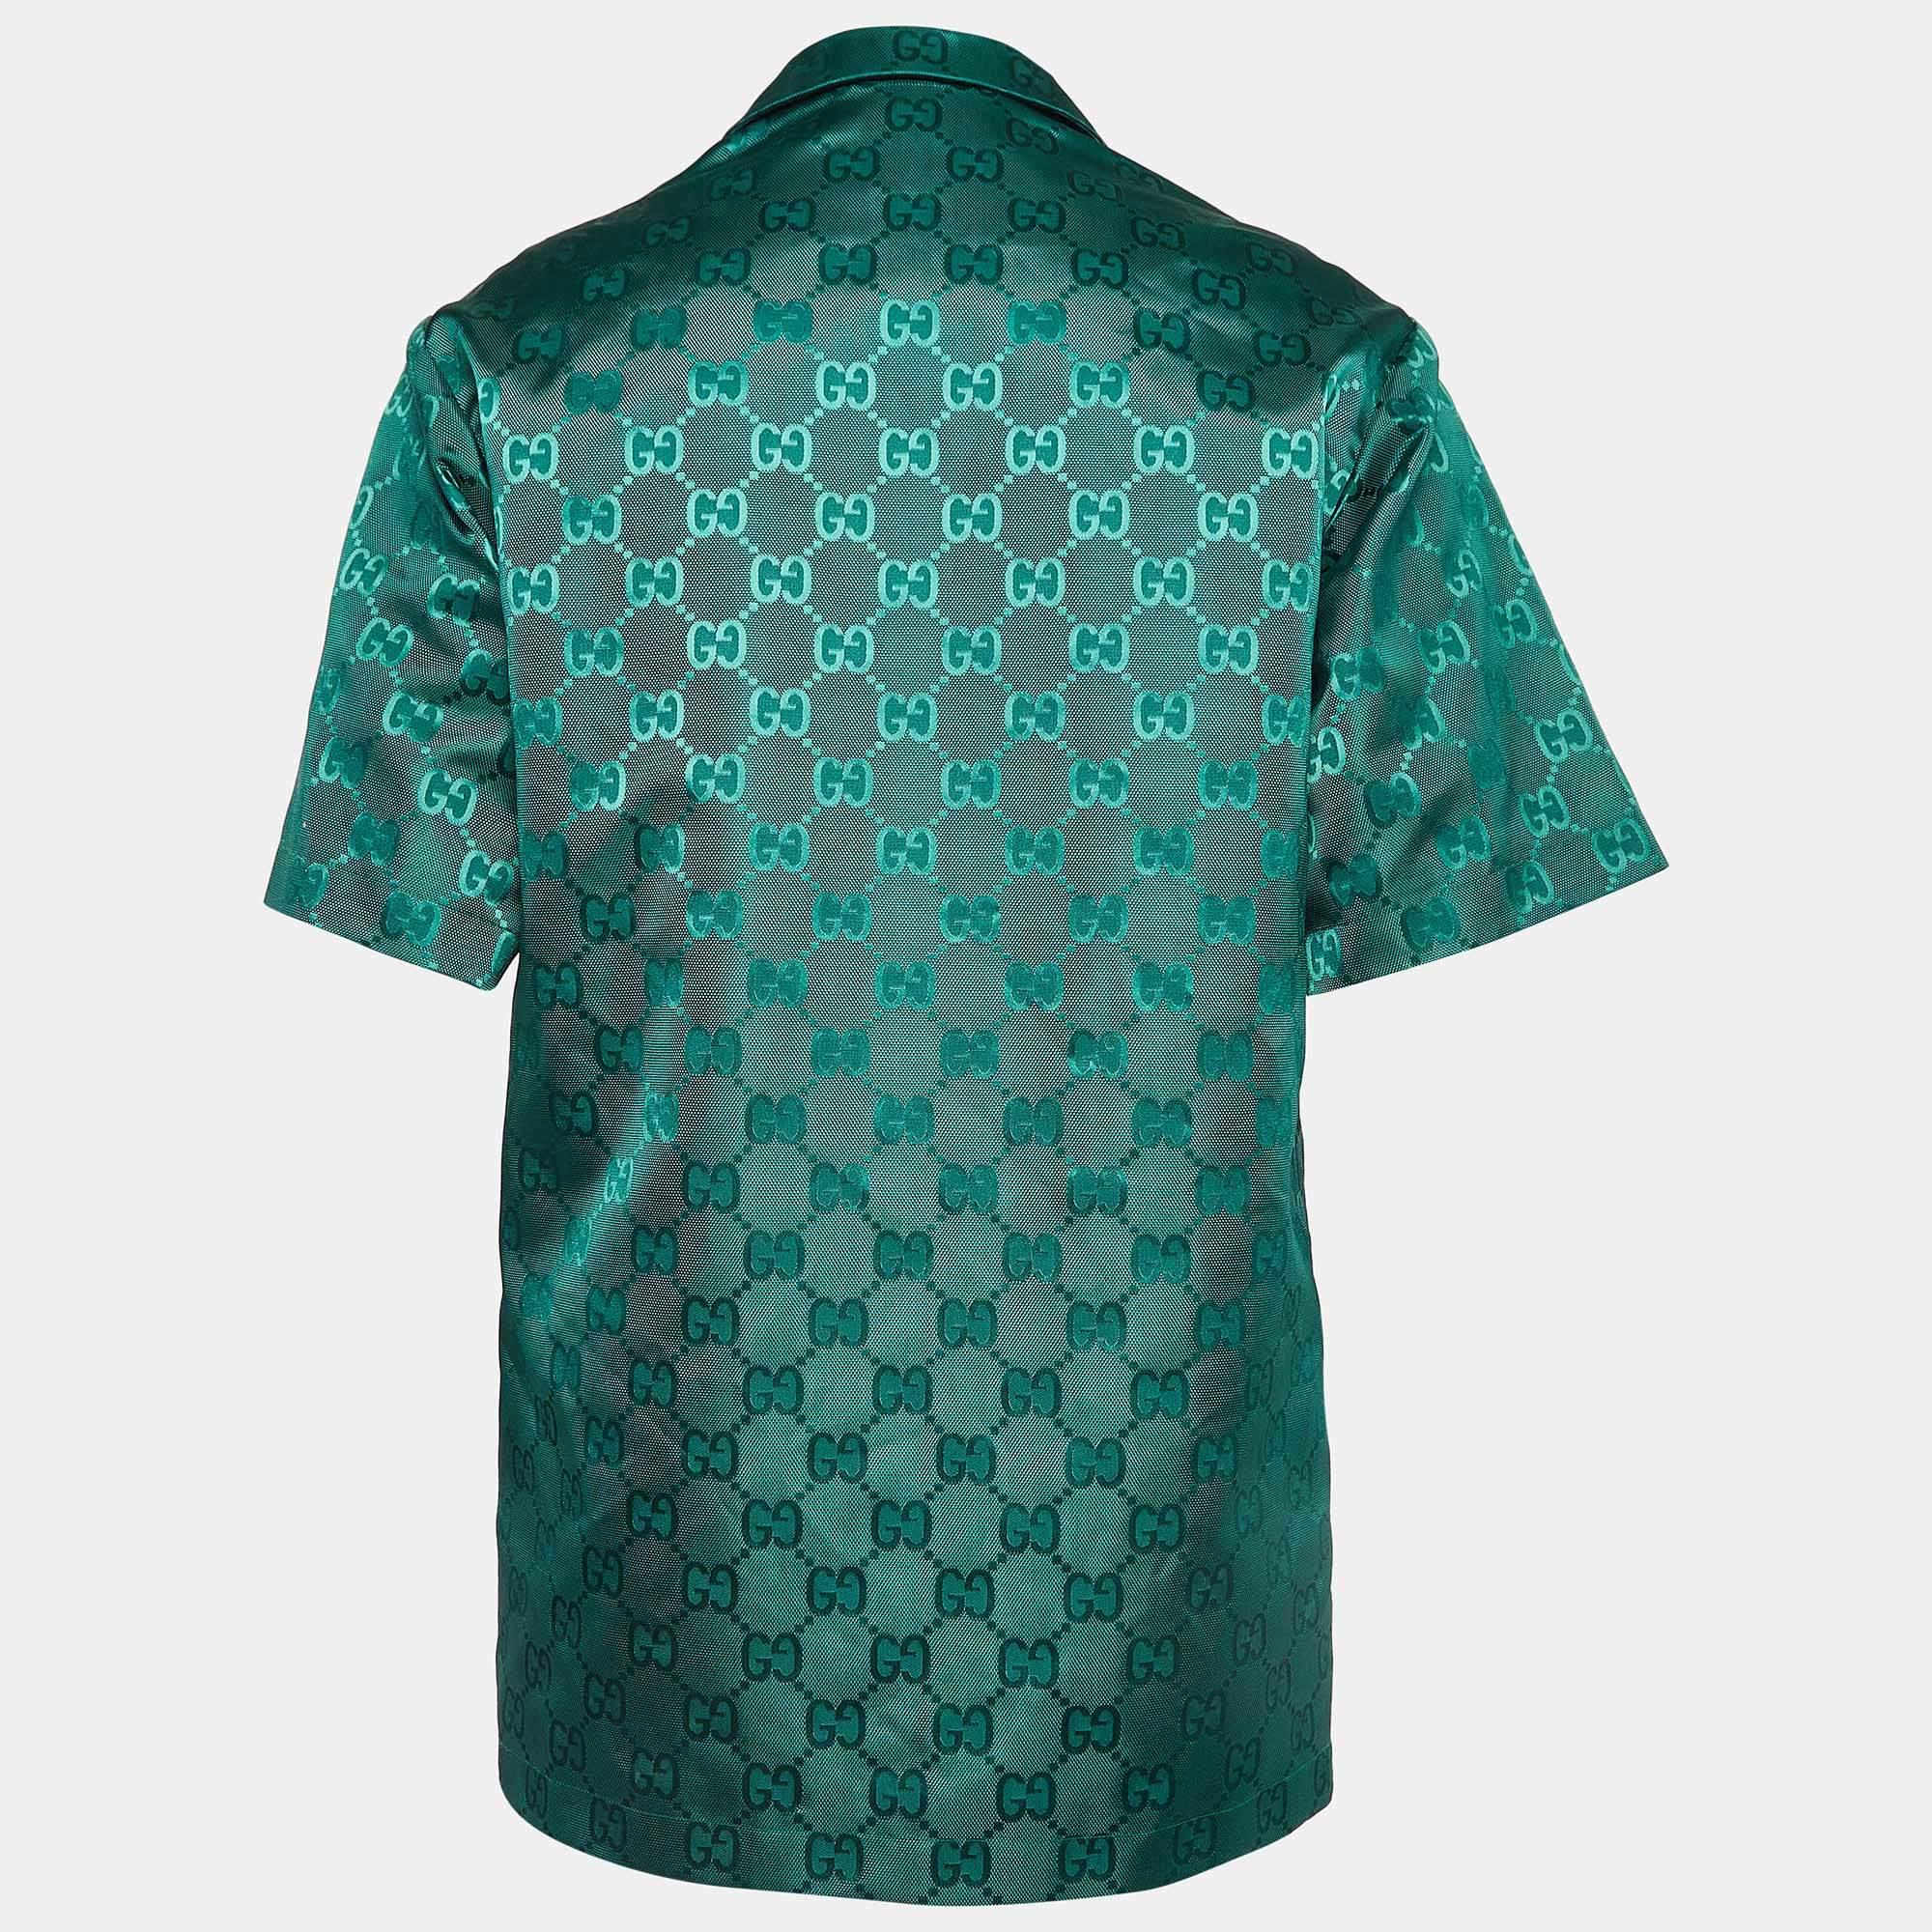 Das Gucci Bowlinghemd ist der Inbegriff lässiger Eleganz. Sie ist aus hochwertigen Materialien gefertigt und in einem grünen Farbton mit dezenten Prints gehalten. Die entspannte Silhouette des Bowlinghemds wird durch eine geknöpfte Vorderseite,